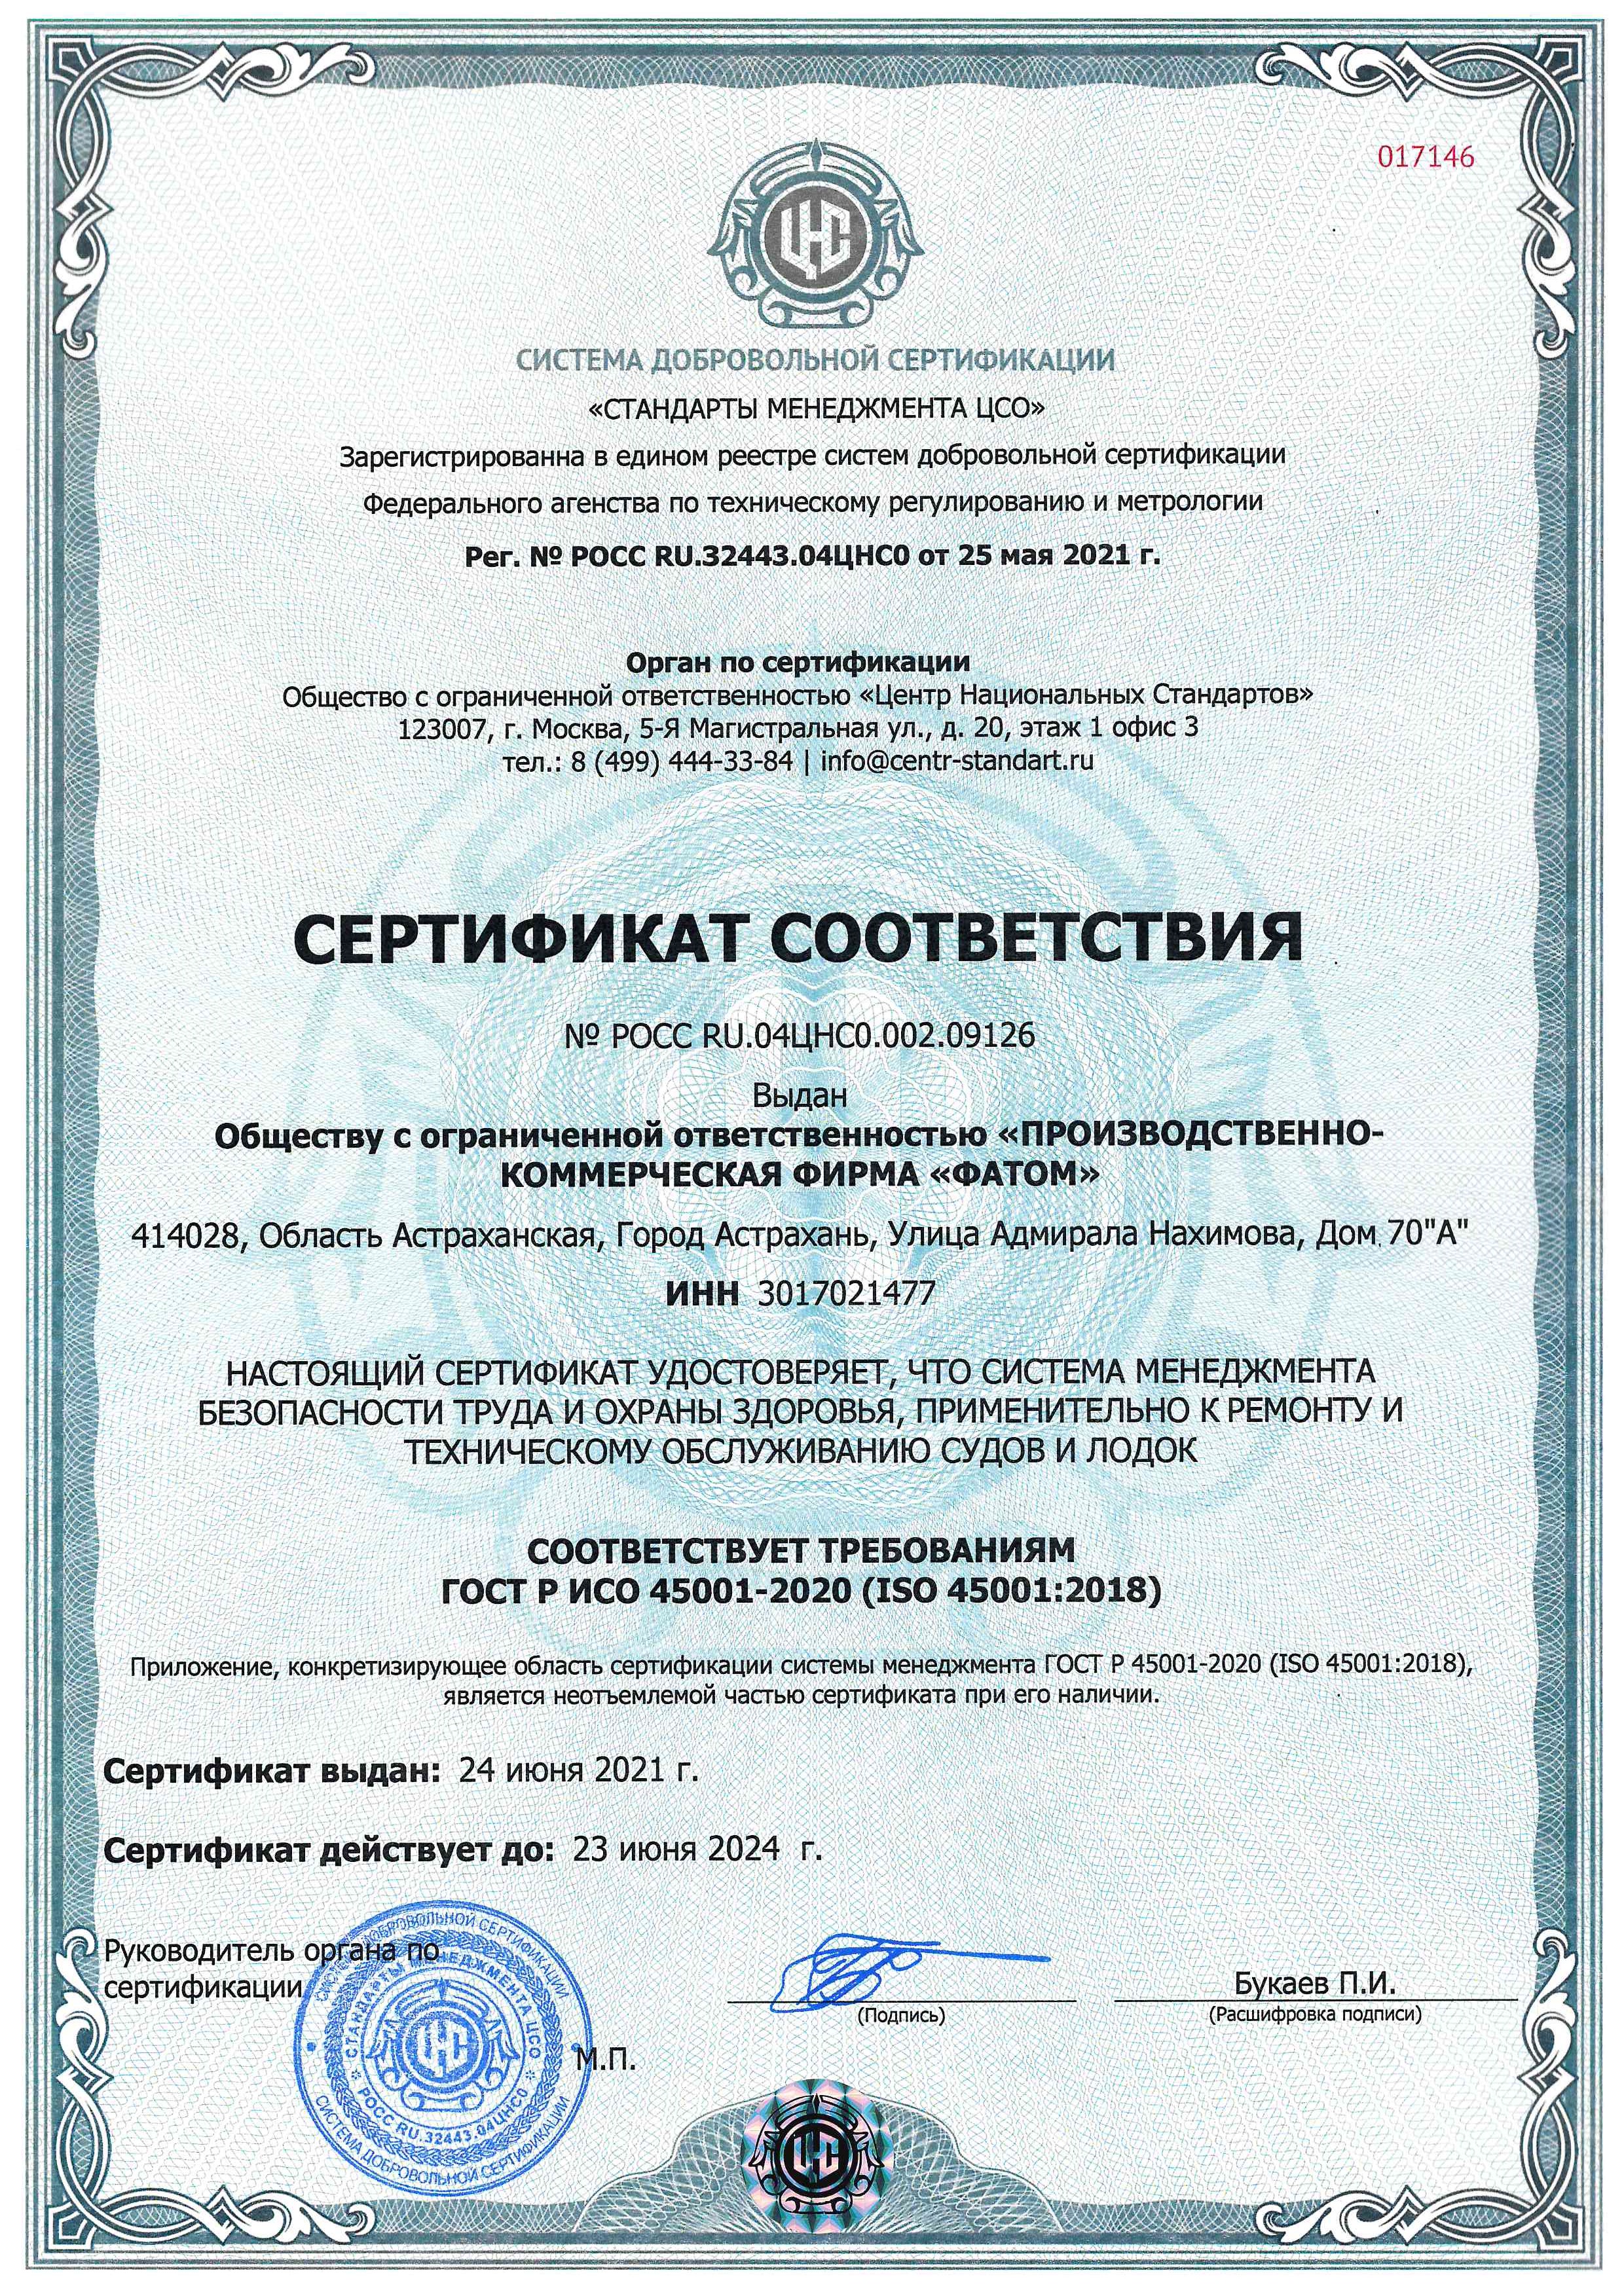 Сертификат соответствия 09126